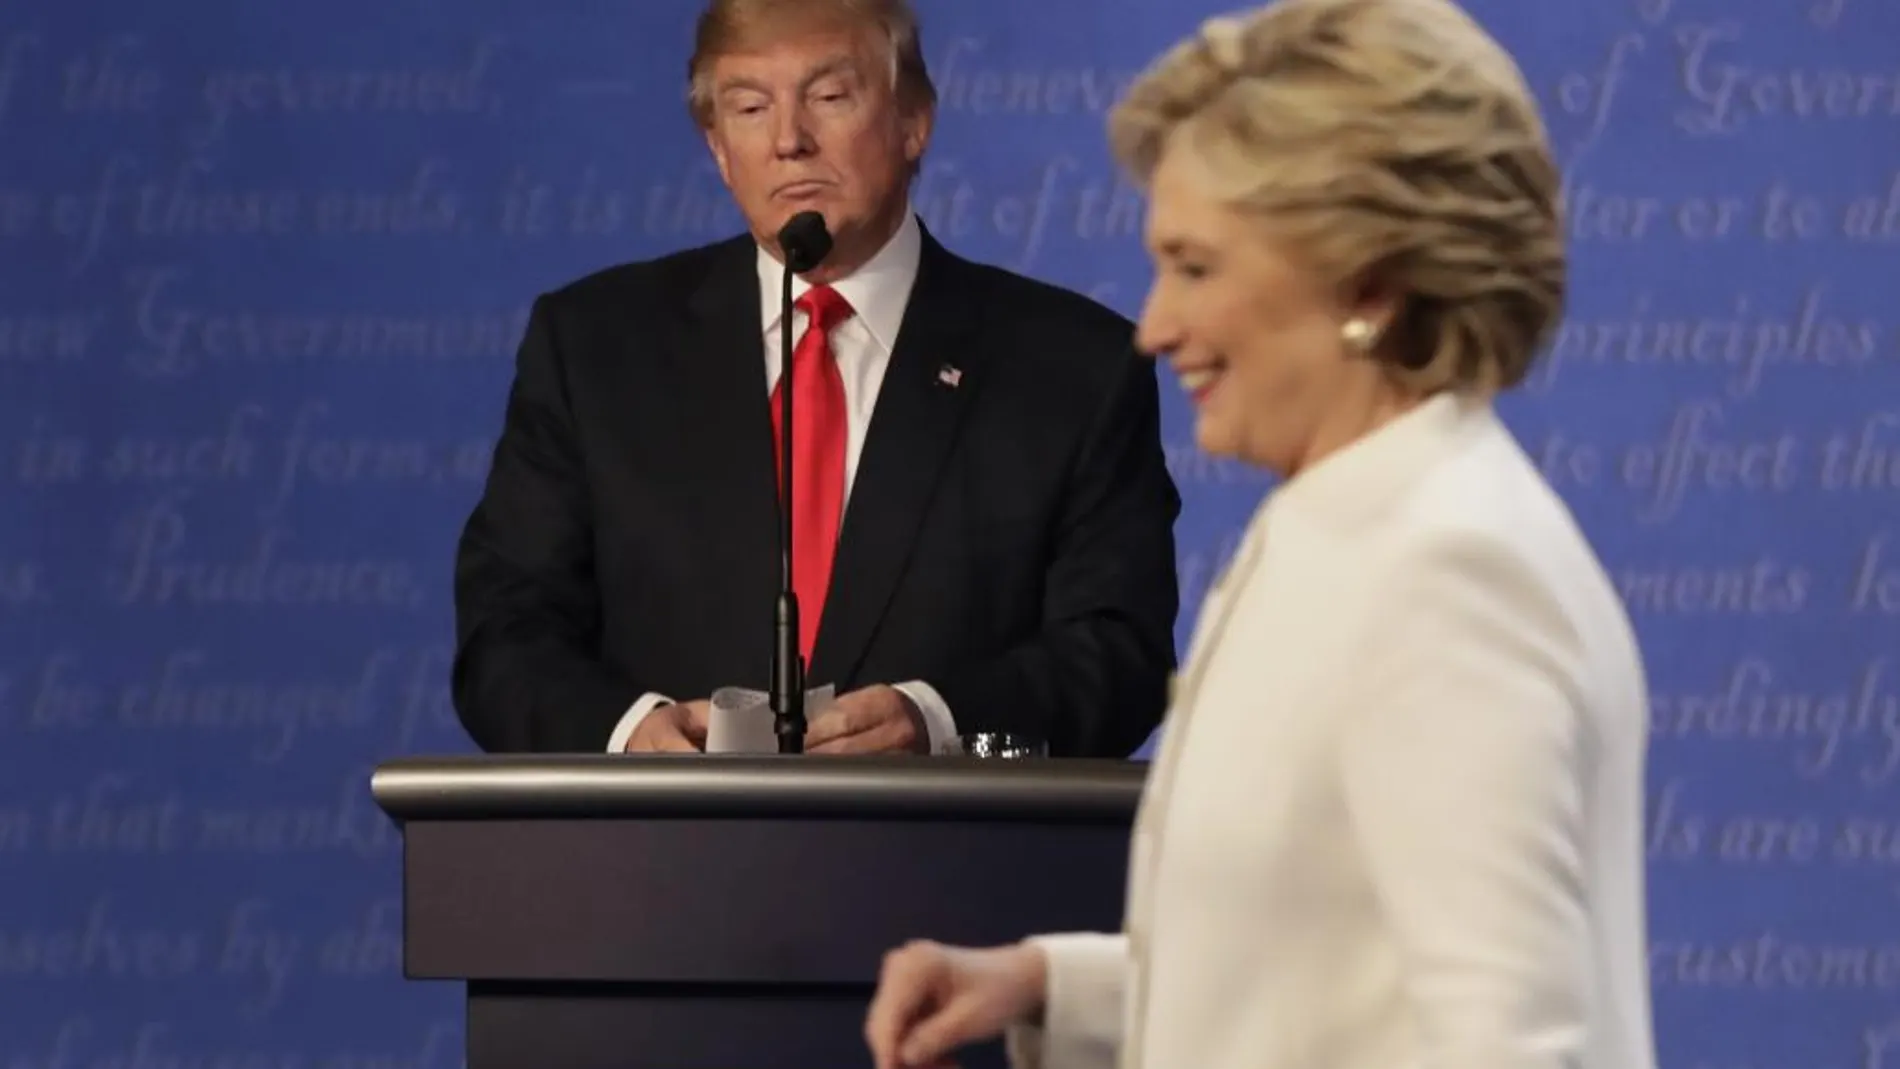 Hillary Clinton y Donald Trump en uno de sus debates televisivos